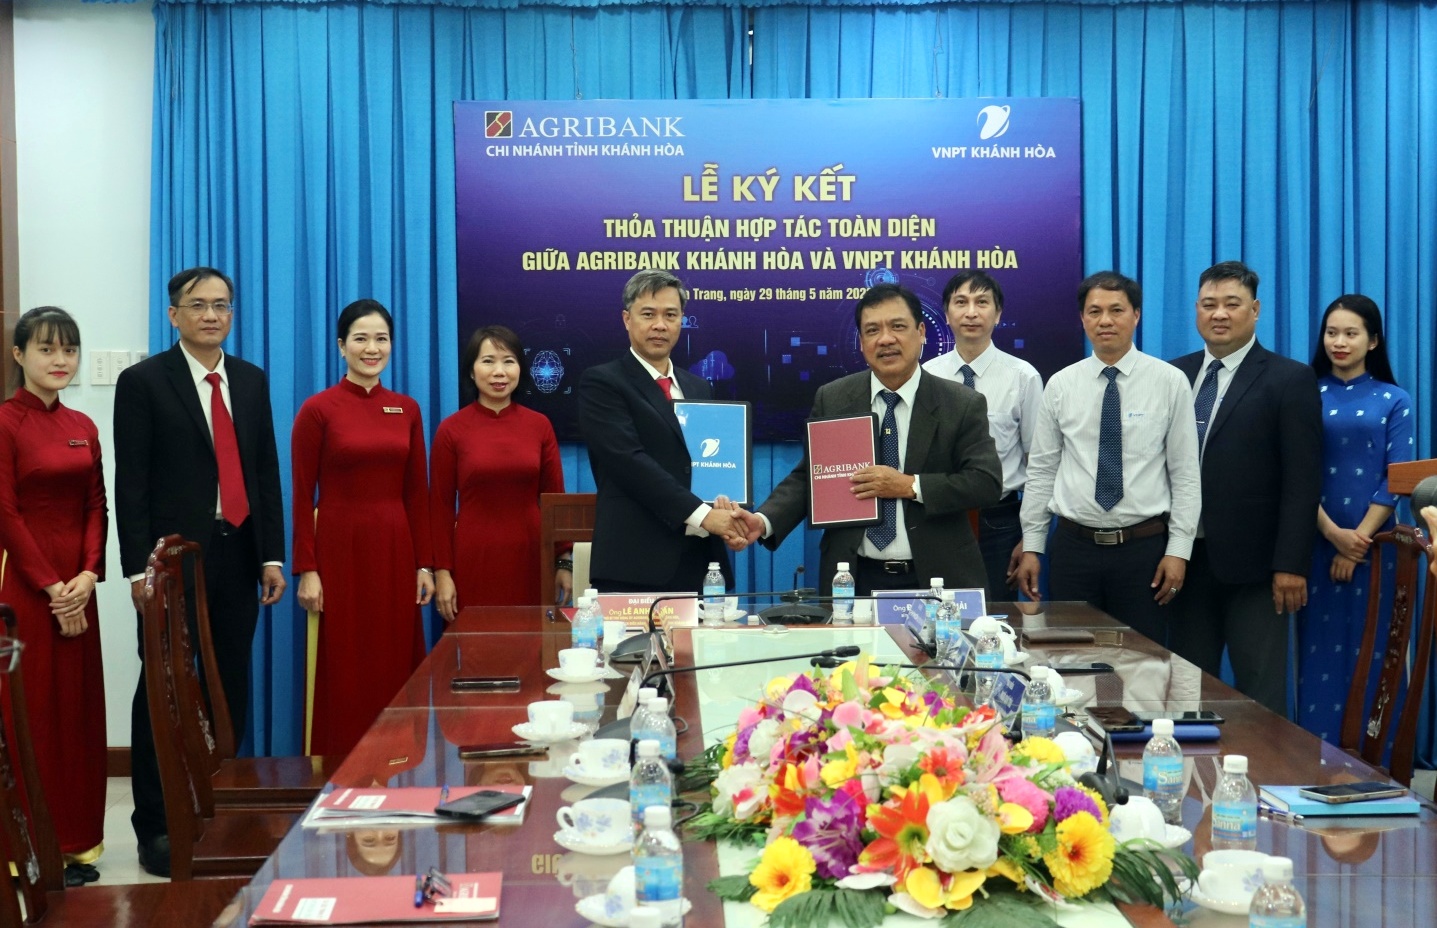 Lãnh đạo Agribank Khánh Hòa và VNPT Khánh Hòa ký kết thỏa thuận hợp tác toàn diện. Ảnh: NH.